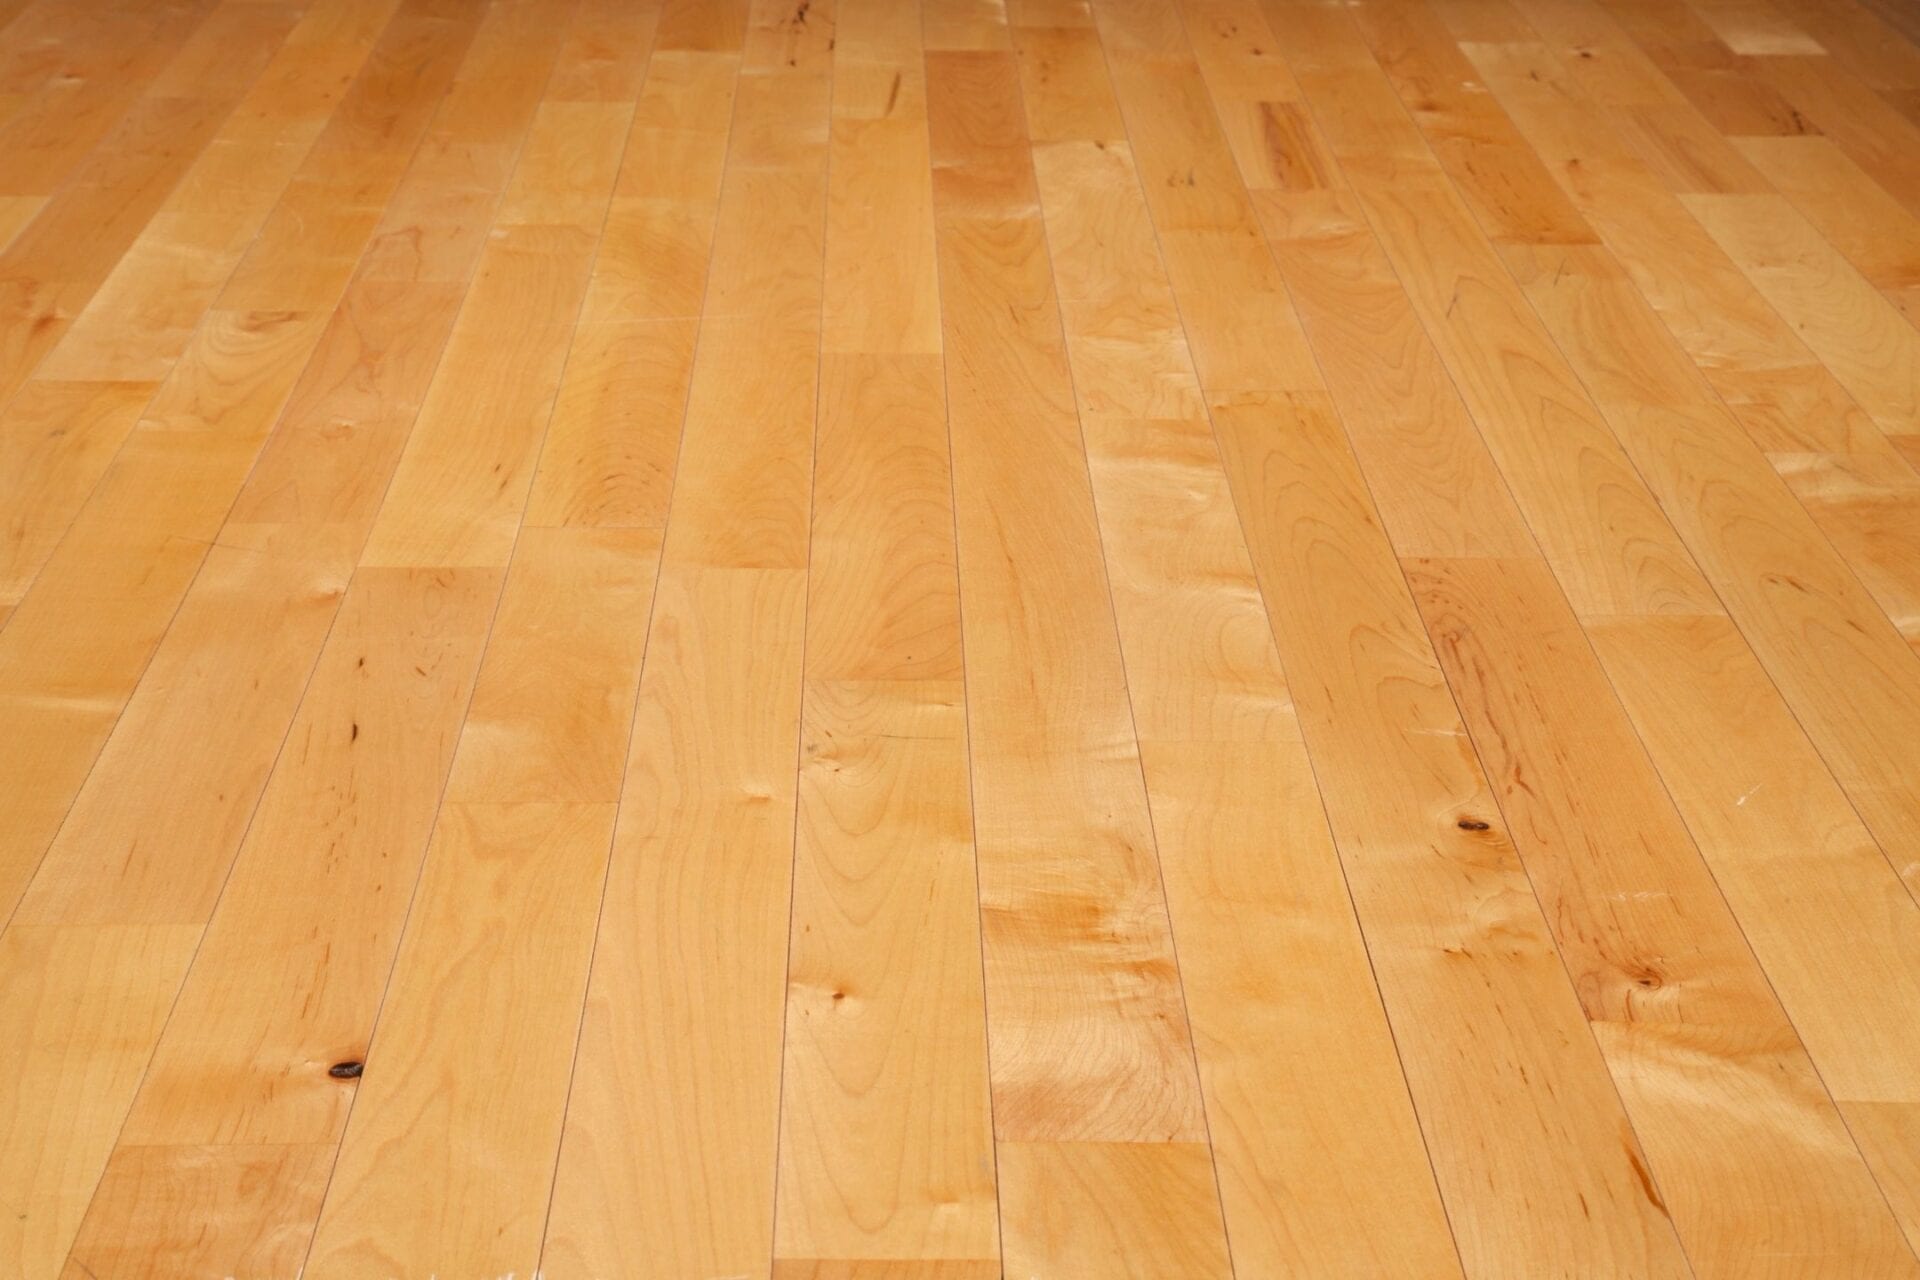 All American Hardwood Floors Inc